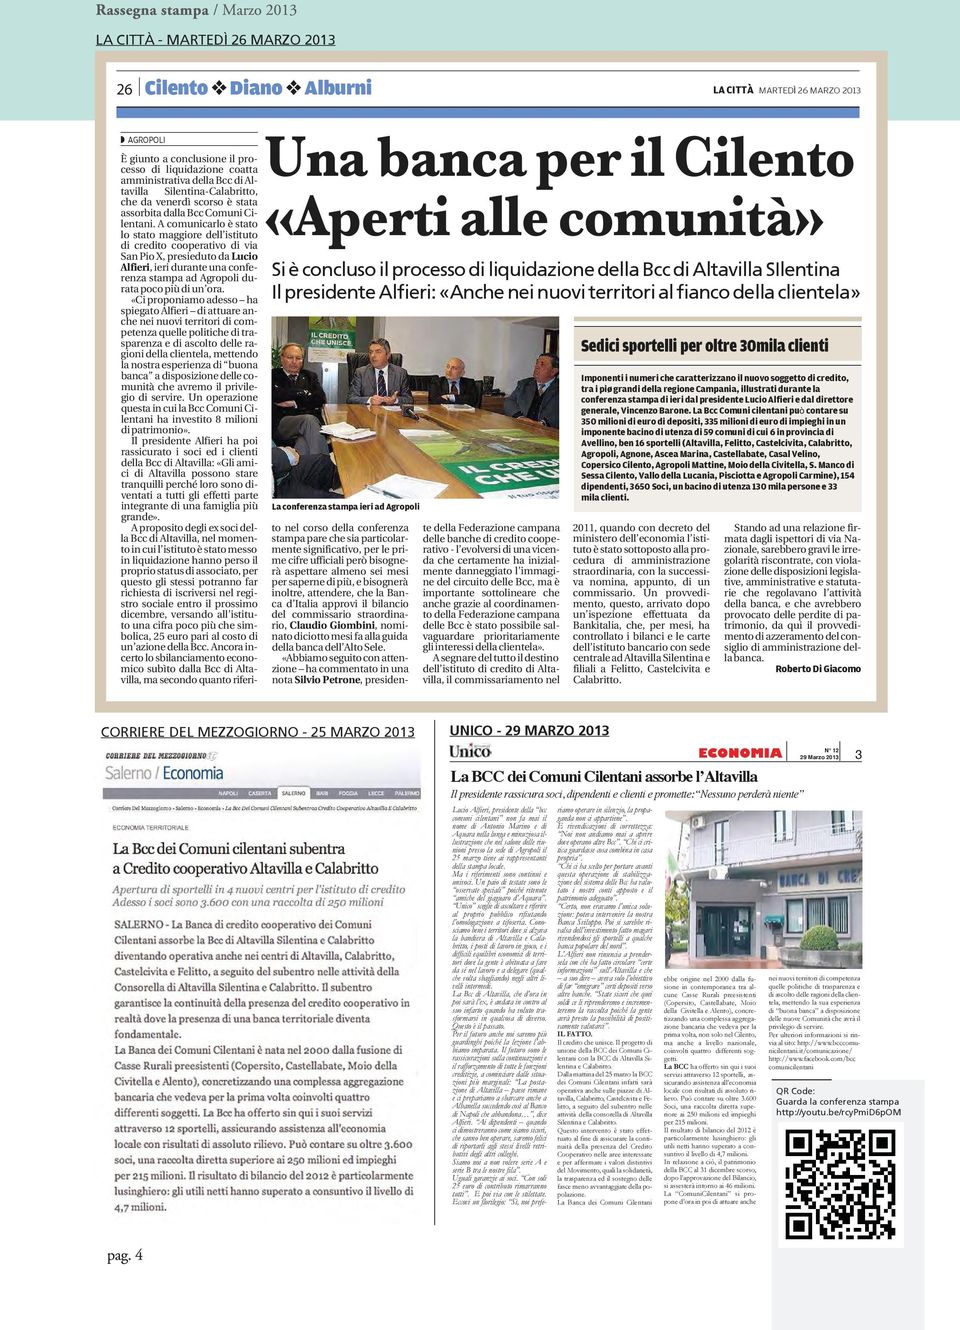 conferenza stampa ieri ad Agropoli tavilla Silentina-Calabritto, che da venerdì scorso è stata assorbita dalla Bcc Comuni Cilentani.